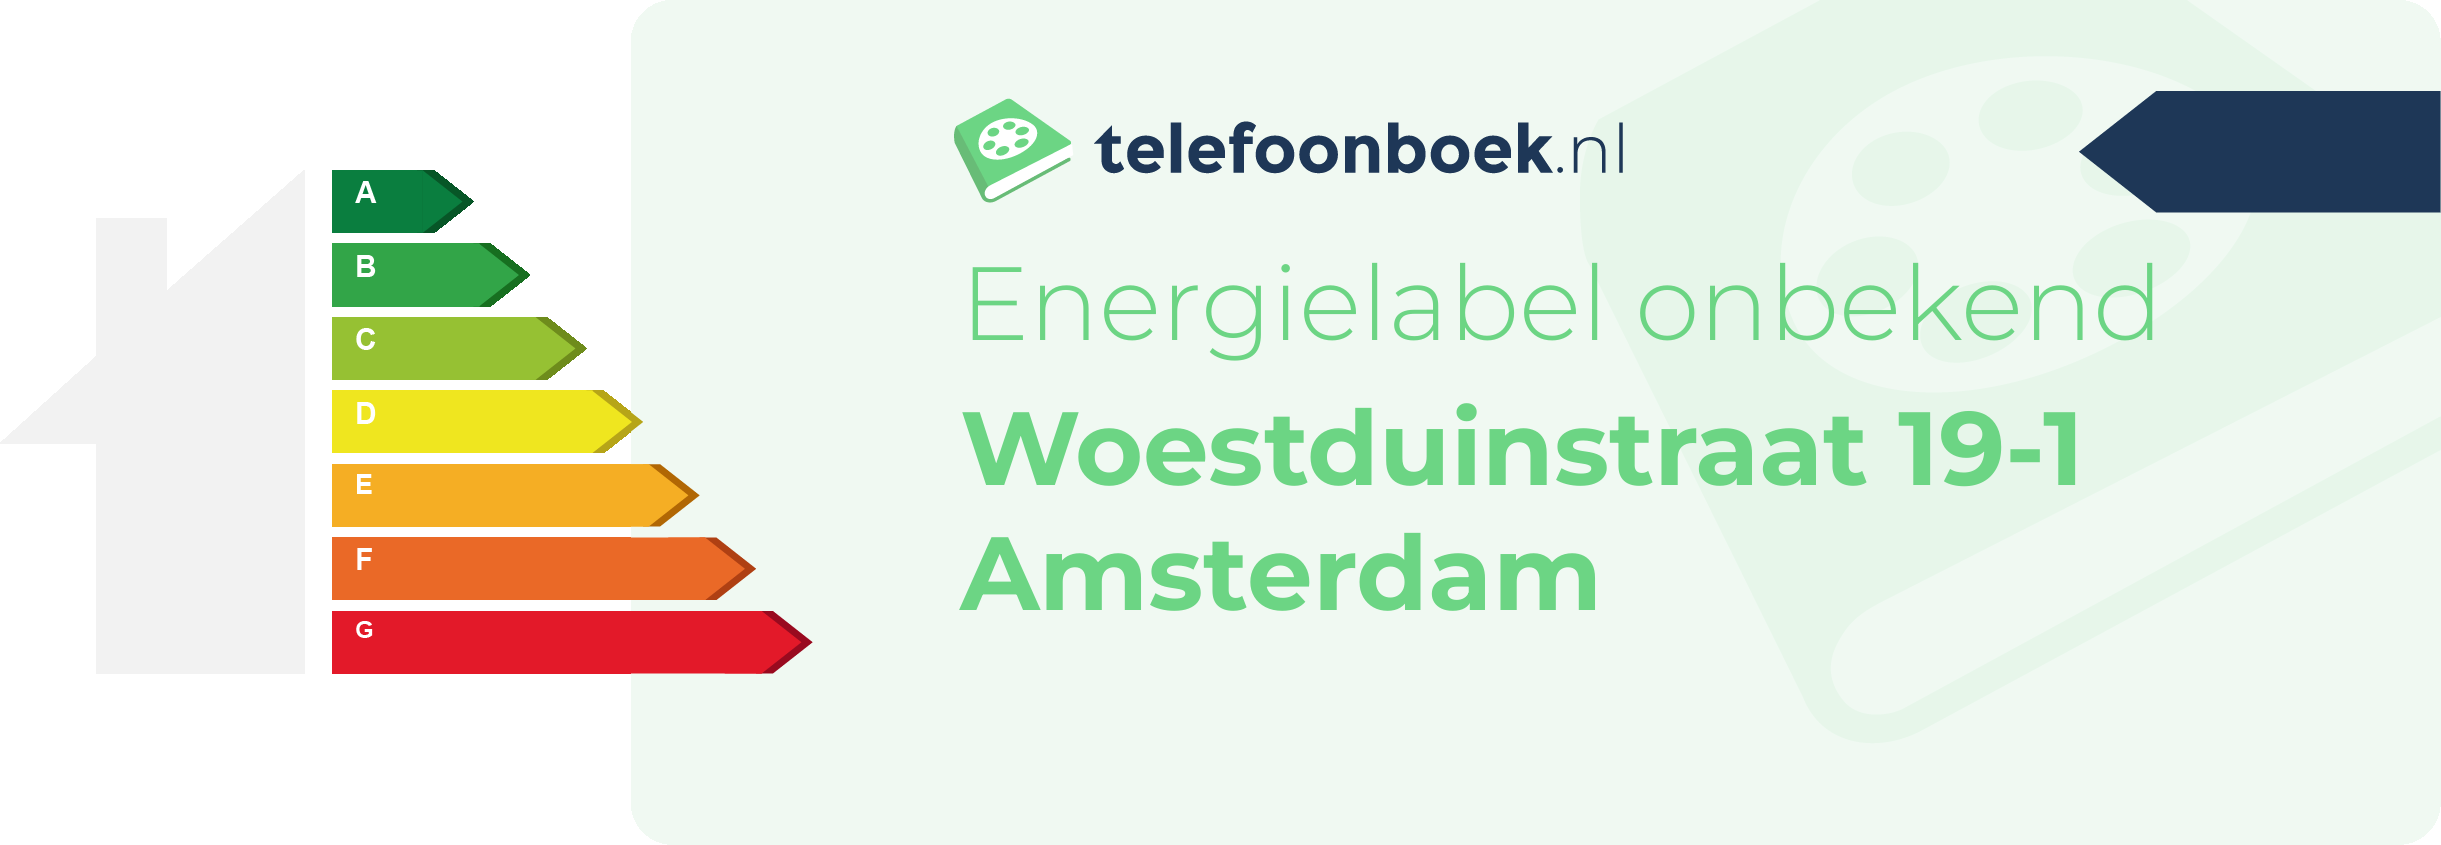 Energielabel Woestduinstraat 19-1 Amsterdam